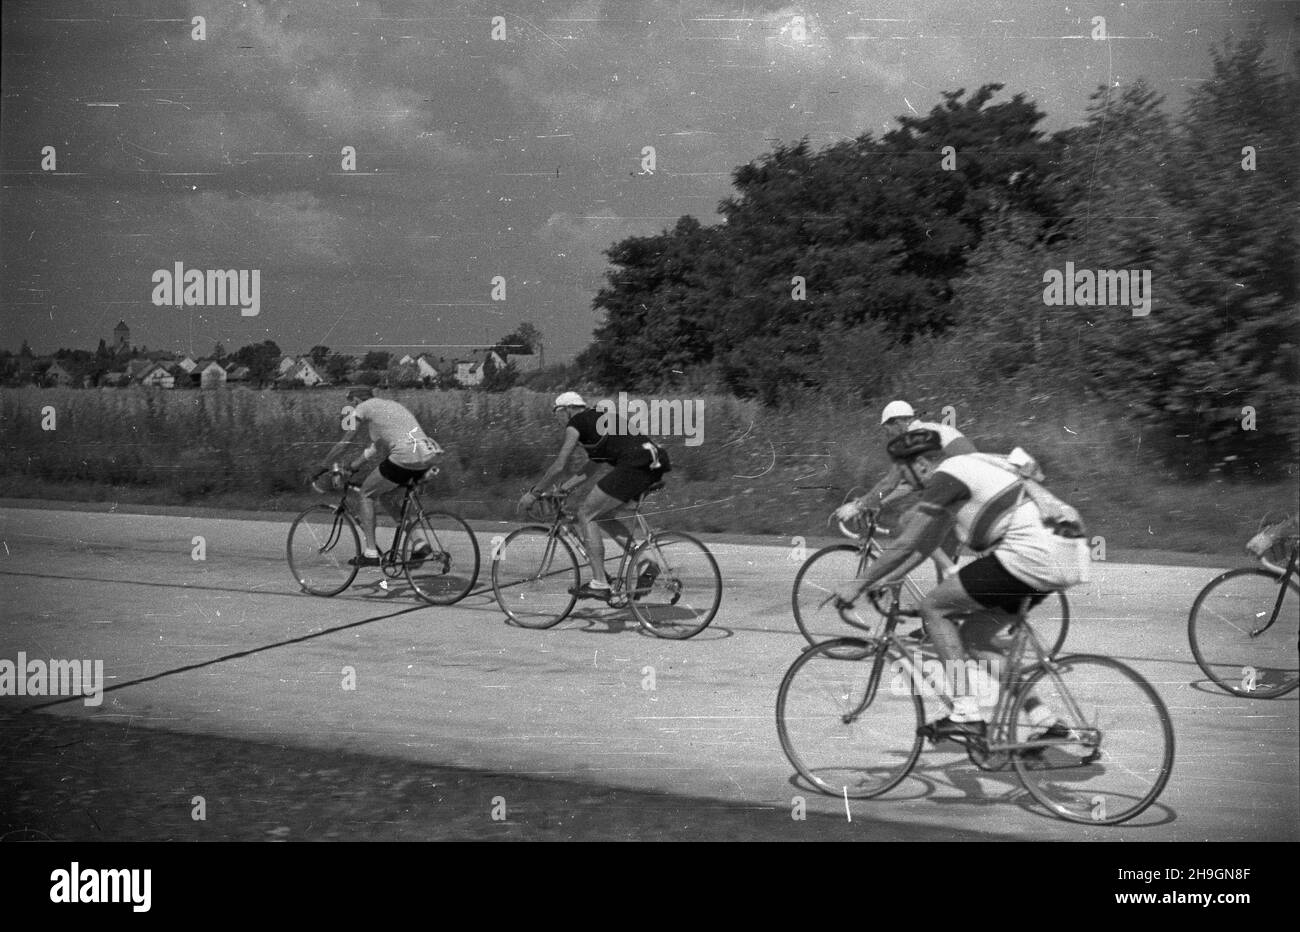 Polska, 1948-06-29. VII Wyœcig Kolarski Dooko³a Polski (Tour de Pologne) odbywa³ siê w dniach 22 czerwca - 4 lipca. Wystartowa³o 71 zawodników, przyjecha³y reprezentacje Czechos³owacji, Szwecji, Wêgier. Nz. kolarze na licz¹cej 170 km trasie 7. etapu z Wroc³awia do Bytomia. mw  PAP      Poland, June 29, 1948. The 7th Tour de Pologne cycling race was held on 22 June-4 July with 71 contenders taking part, including teams from Czechoslovakia, Sweden, Hungary. Pictured: cyclists during the 170-km 7th stage from Wroclaw to Bytom.   mw  PAP Stock Photo